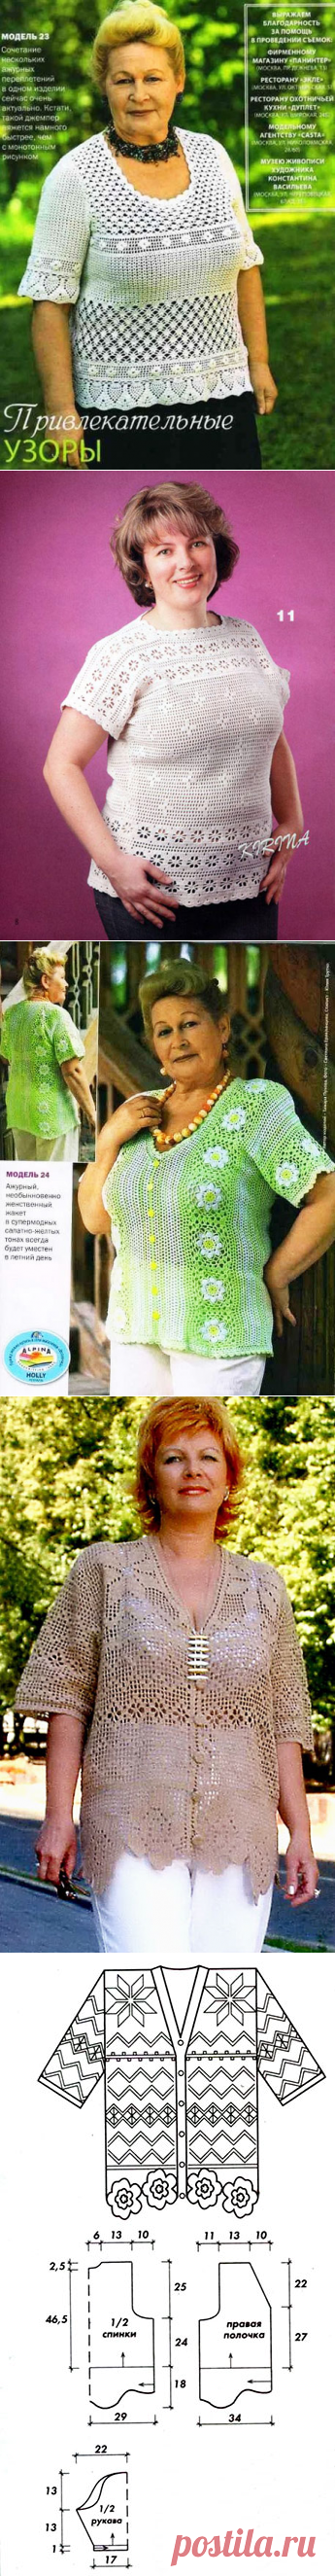 Летние блузы для полных женщин крючком филейной техникой – 4 схемы узоров с описанием